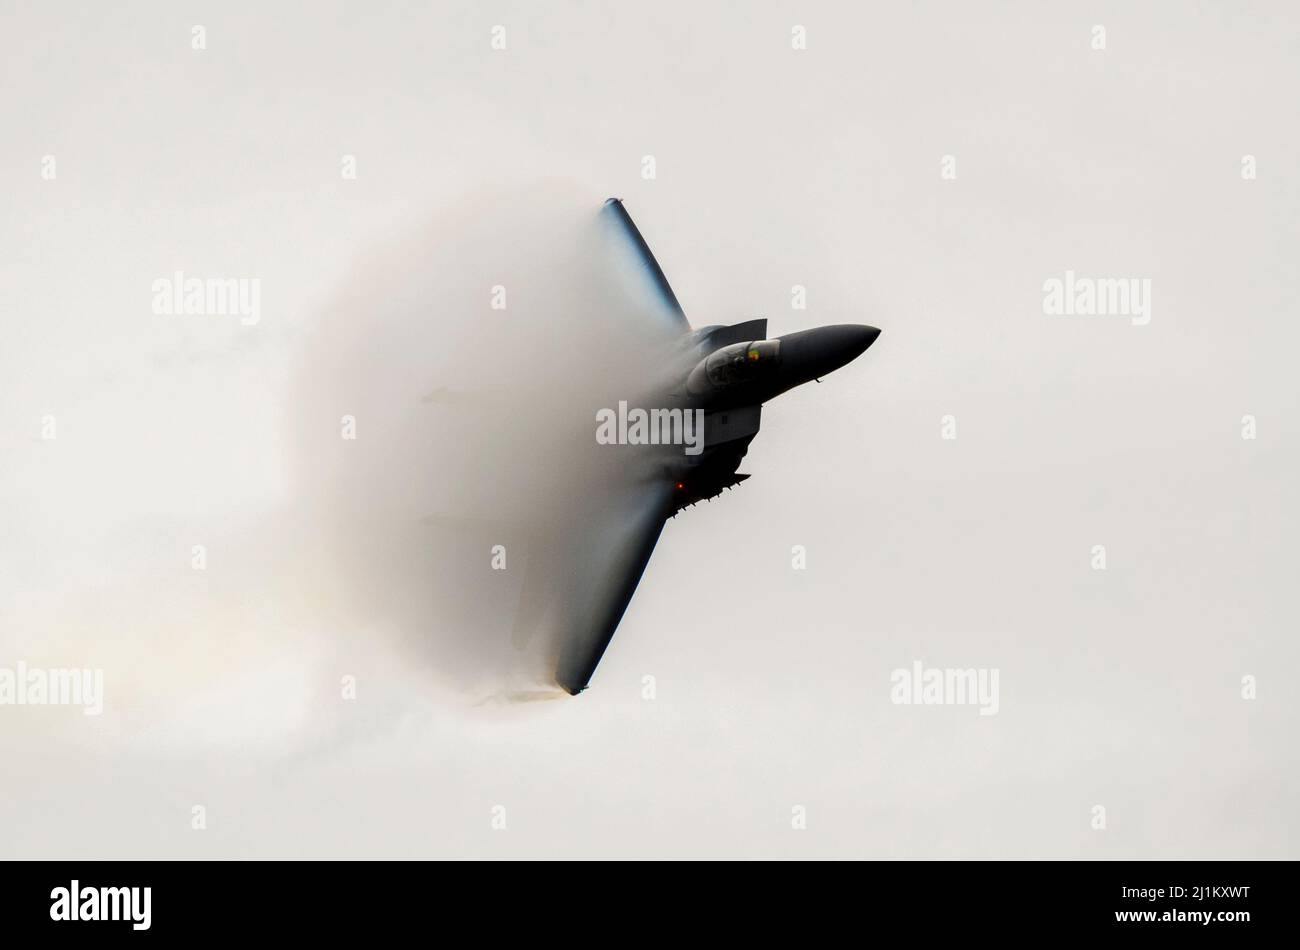 USAF McDonnell Douglas F-15 Eagle Kampfflugzeug mit hoher Geschwindigkeit und Kondensationsdampf, der auf den Flügeln Wolken von Feuchtigkeit bildet. Harte Wendung ziehen Stockfoto